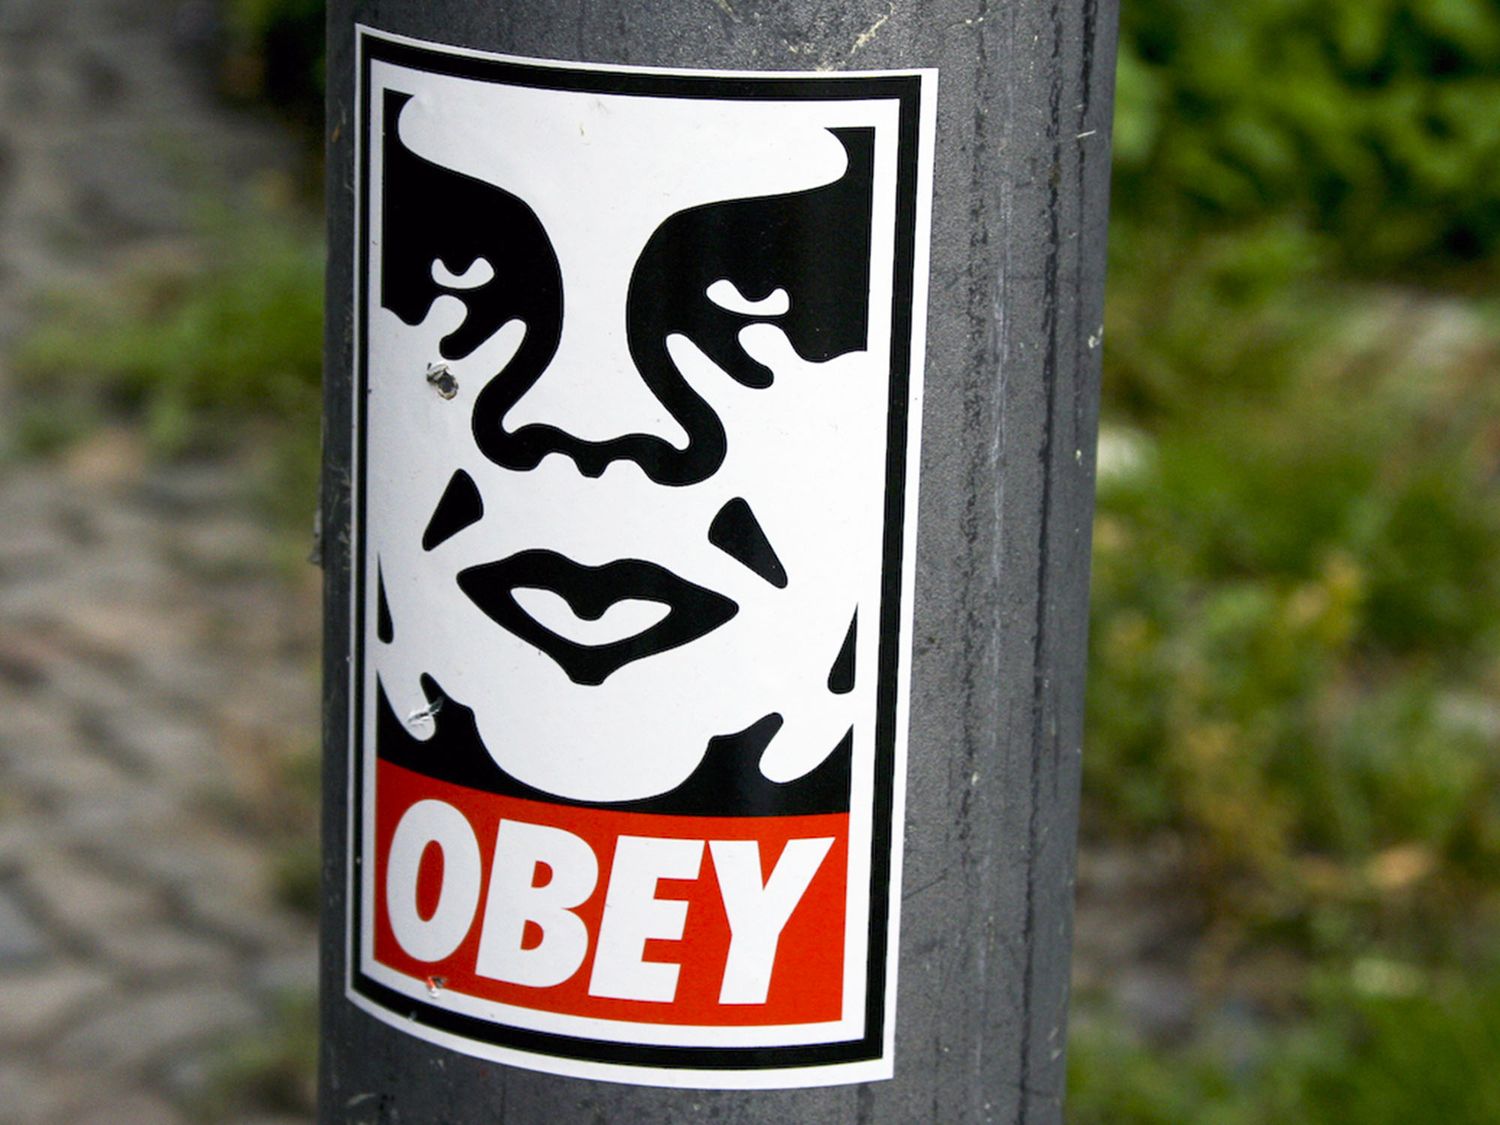 Facile à transporter et rapide à coller, les stickers sont notamment la spécialité de l'artiste Shepard Fairey alias Obey qui en a collé plus d’un million sur les murs des villes du monde entier et qui continue!